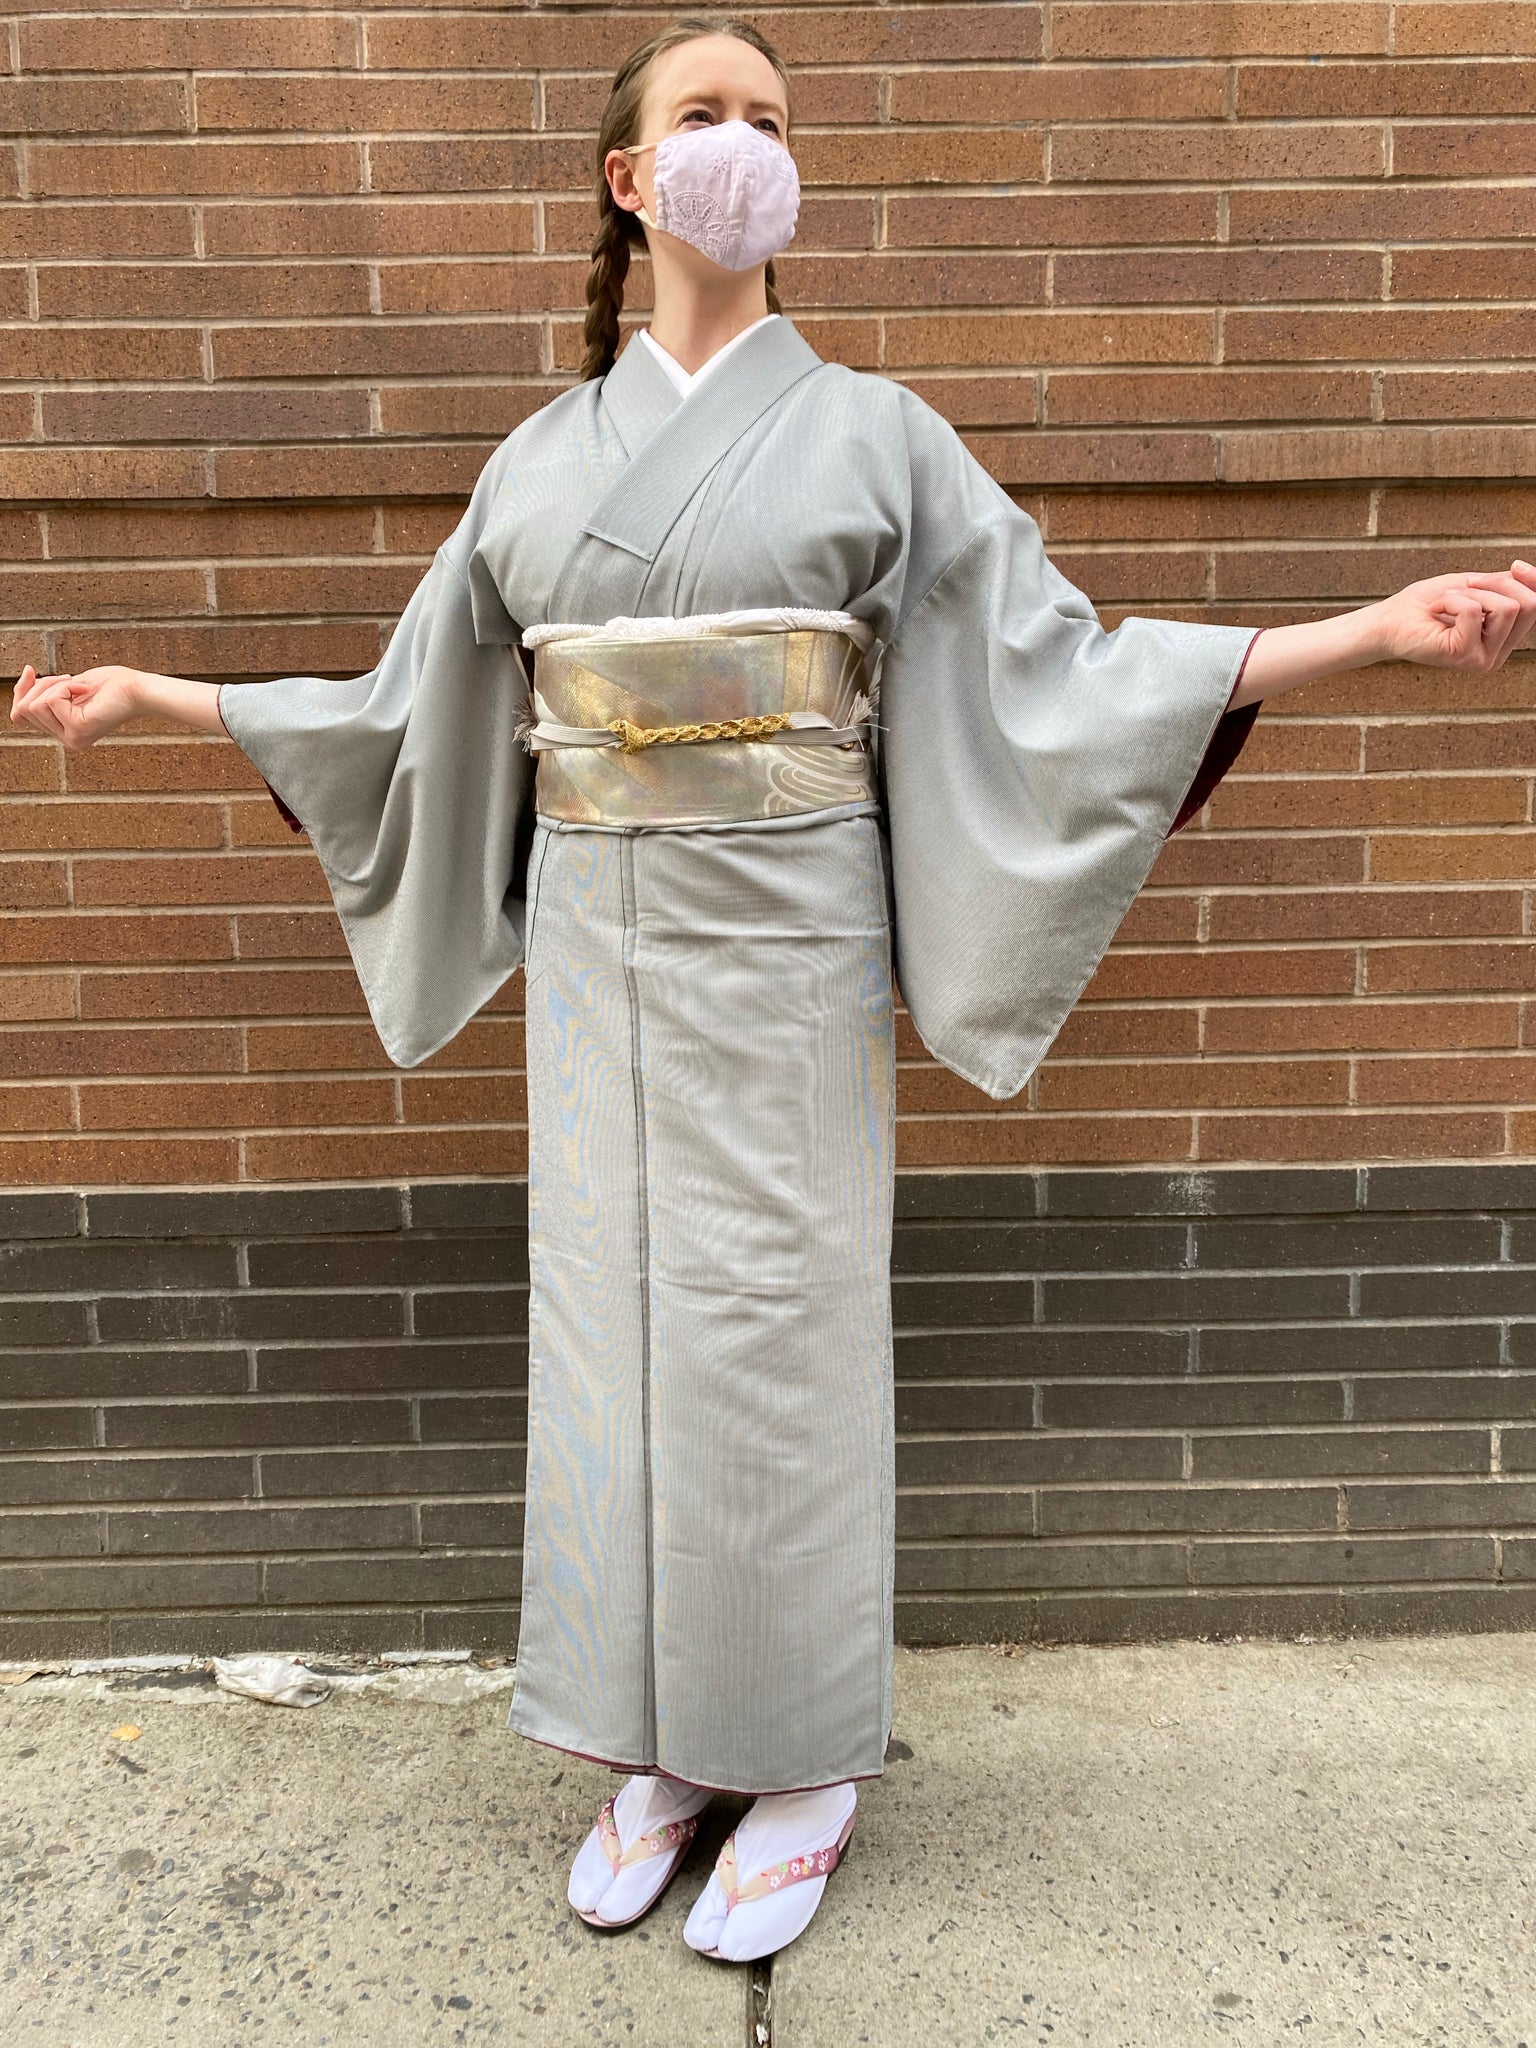 Polyester Silook New Women’s Kimono